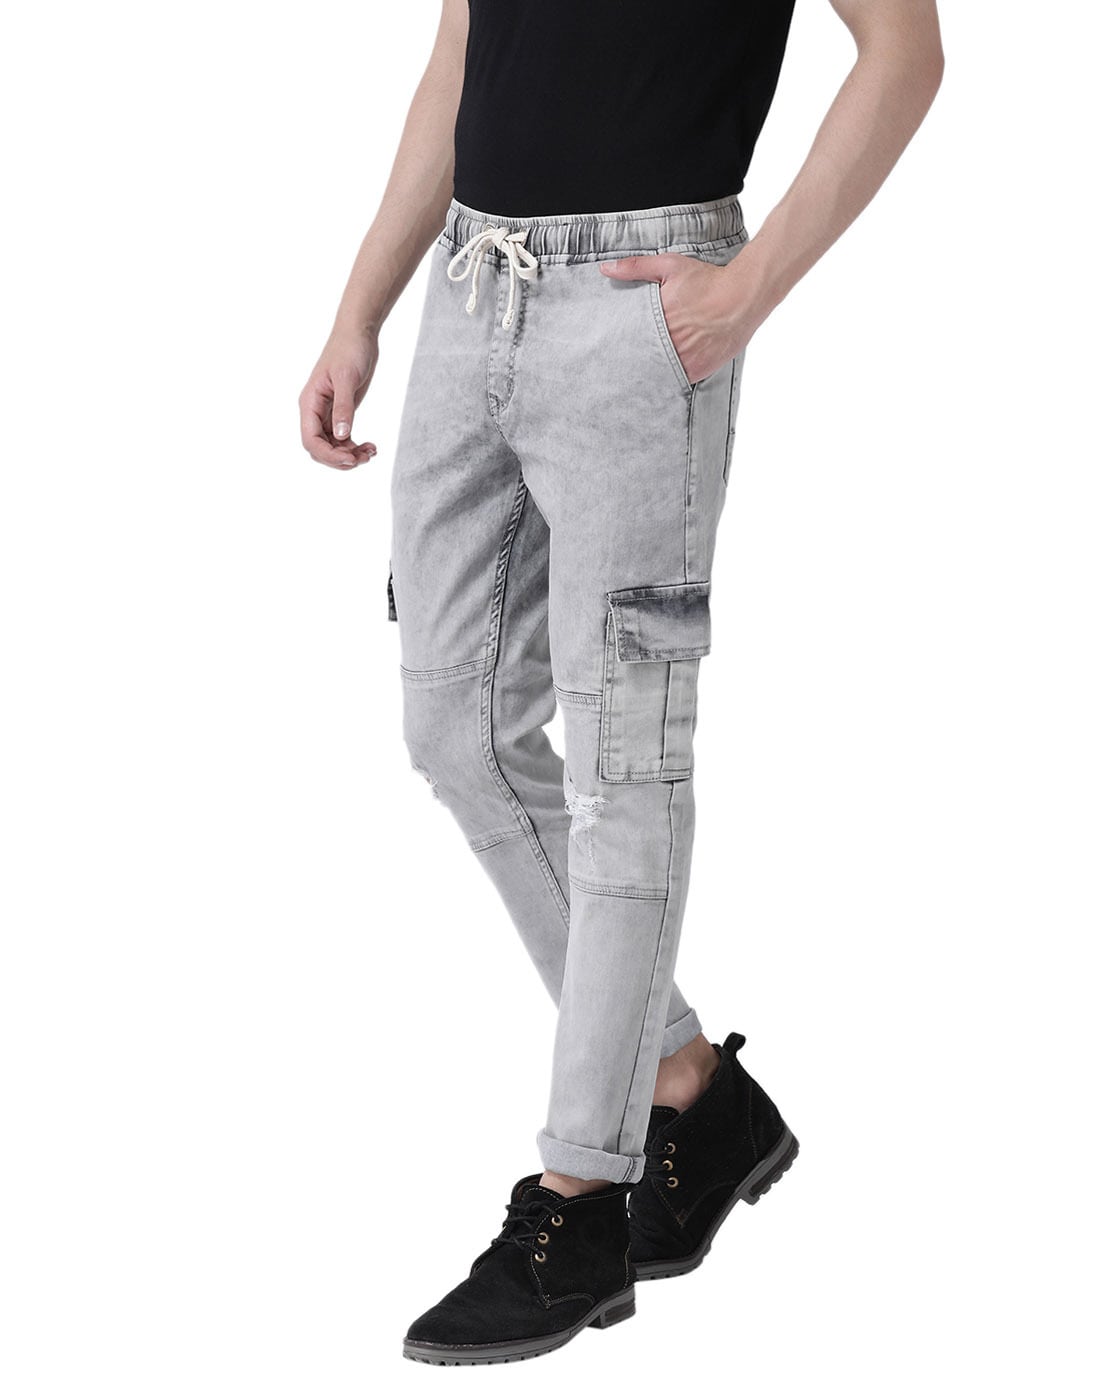 Kilogram Cargo Side Pocket Jeans – DTLR-saigonsouth.com.vn